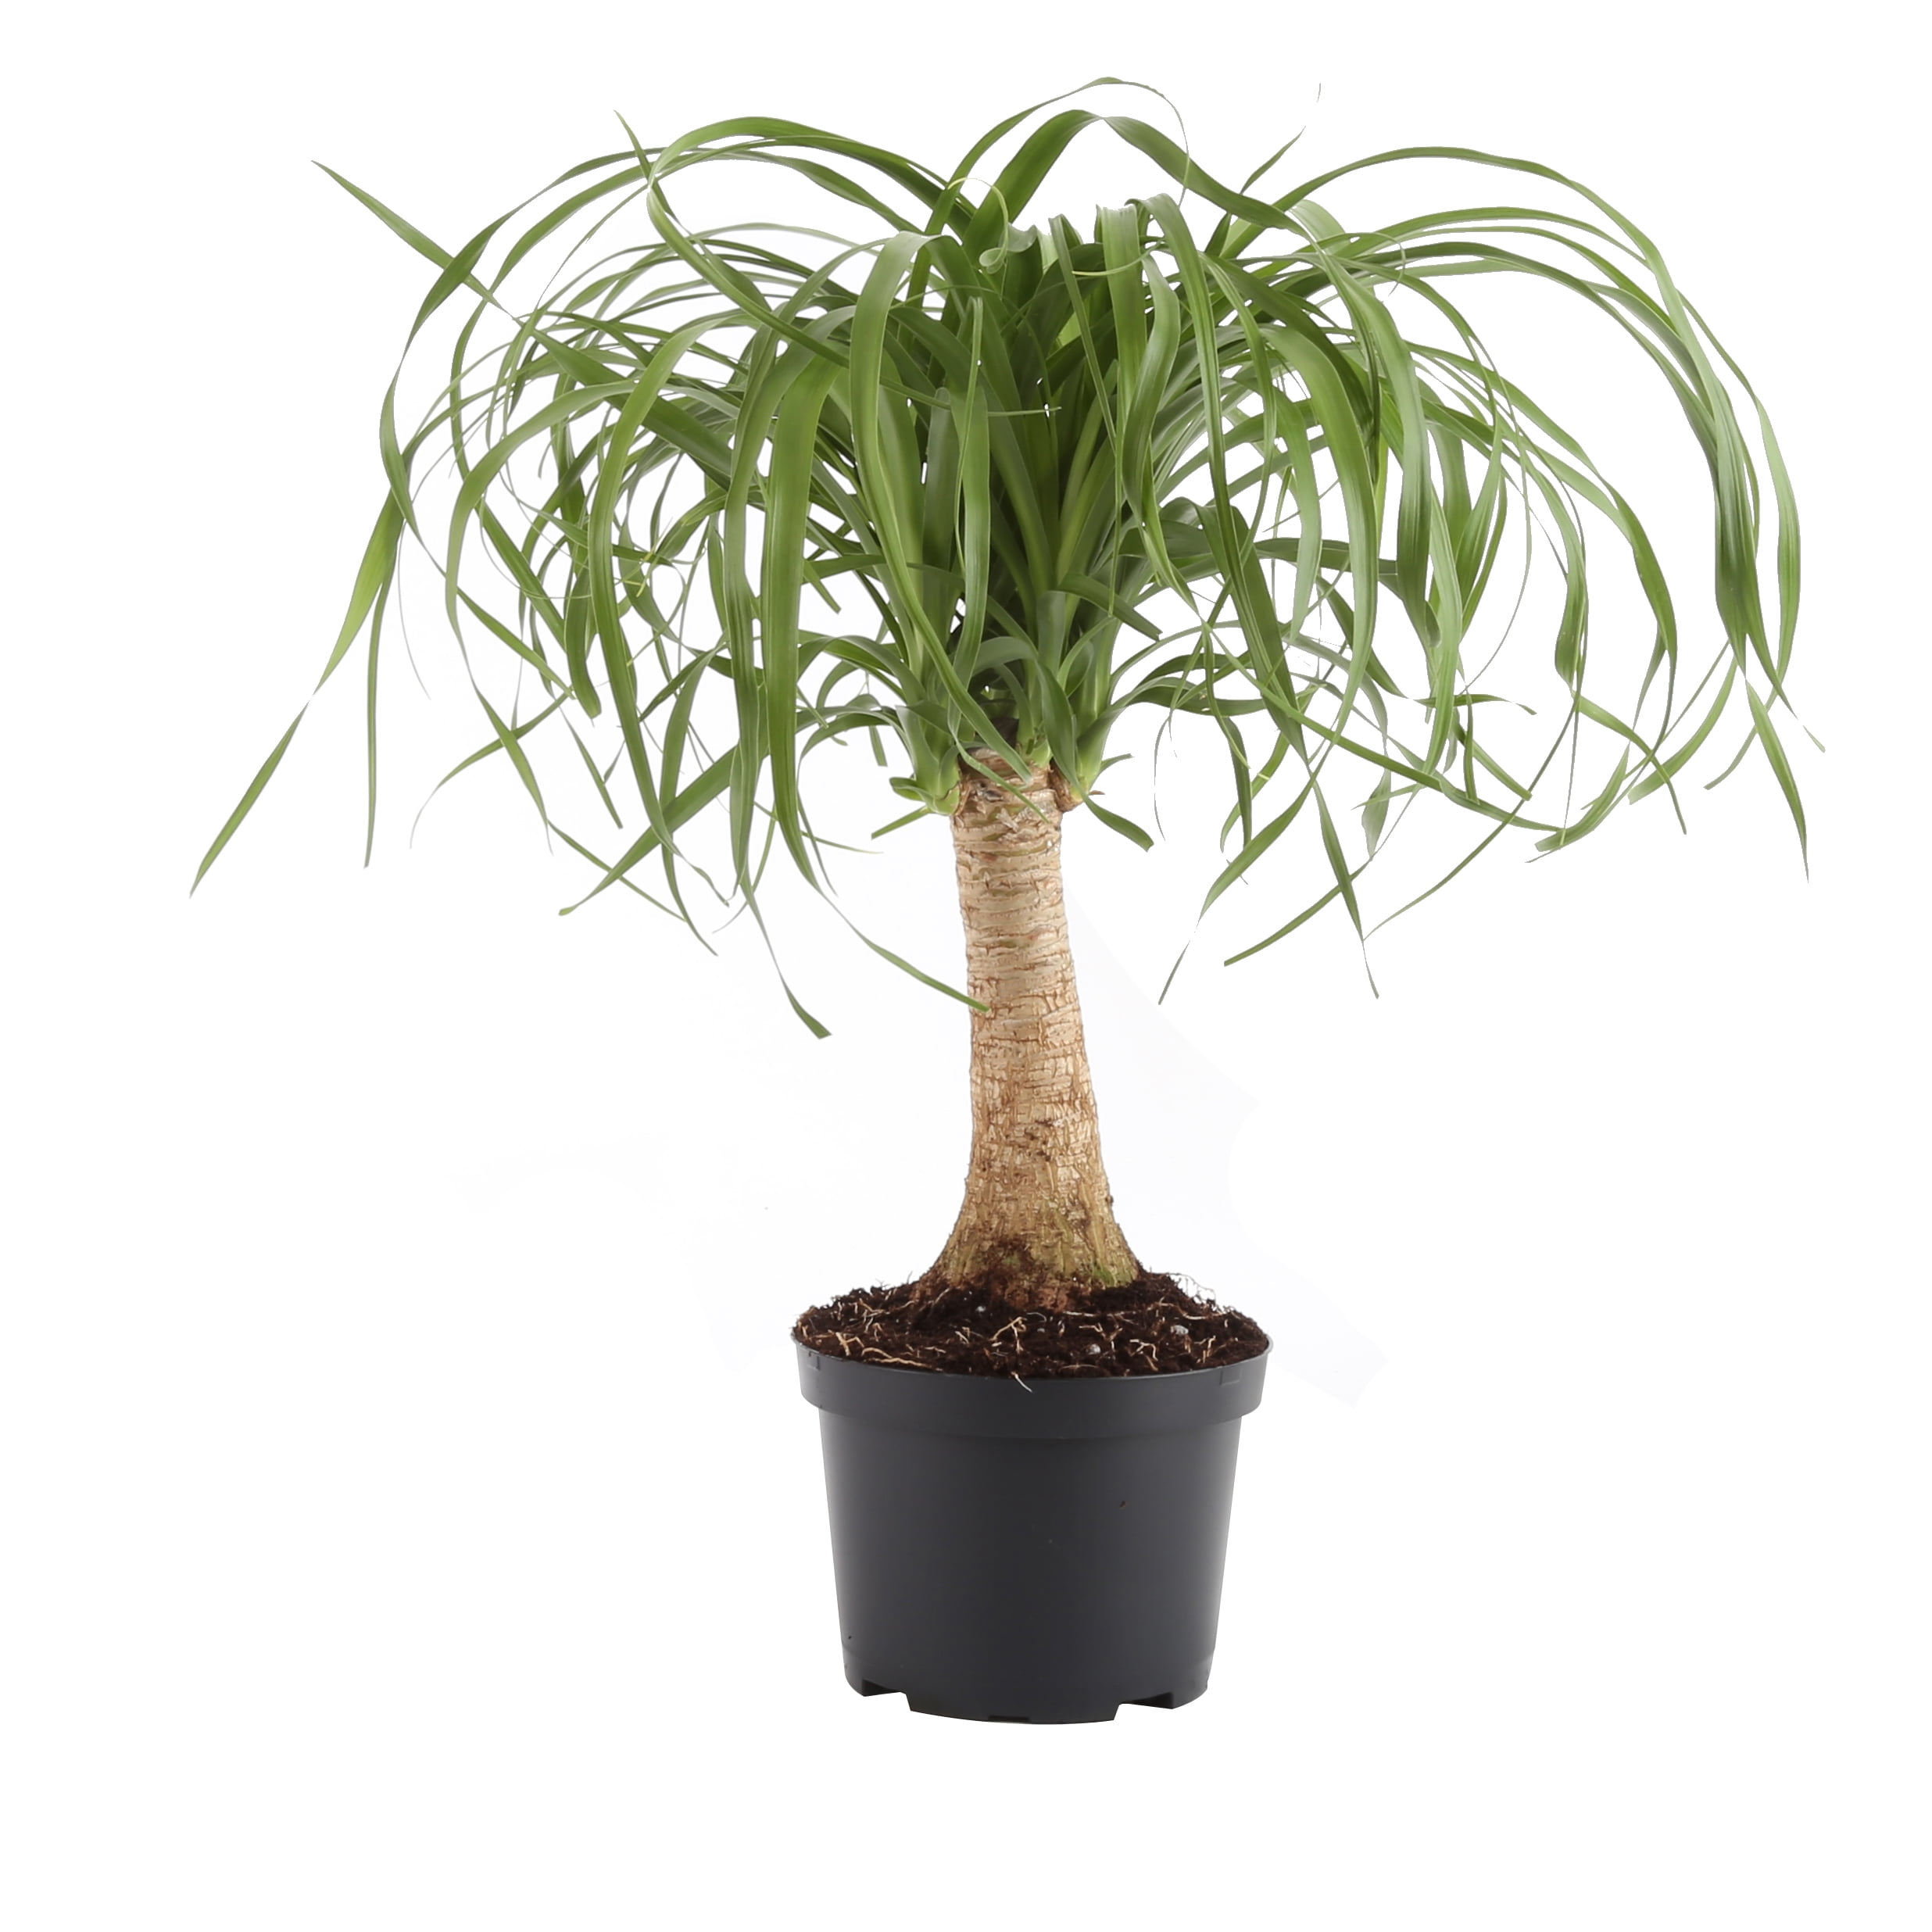 Beaucarnea Recurvata Live Plant Ponytail Palm aka Elephants Foot Indoor Live Plant Fit 1QRT Pot 